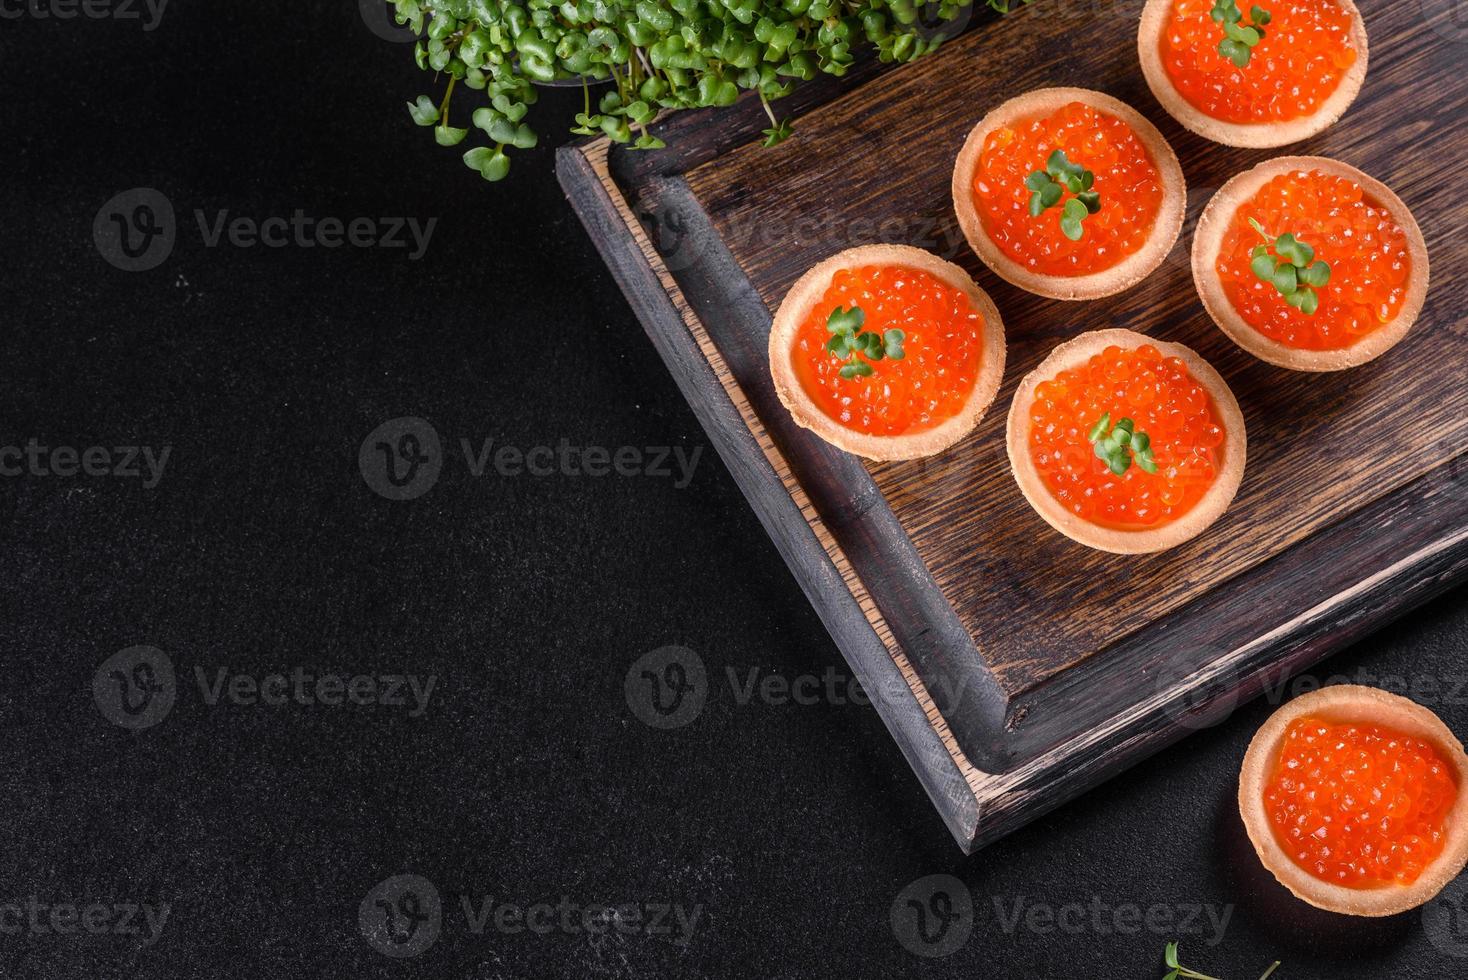 délicieux caviar rouge frais sur une table en béton foncé photo